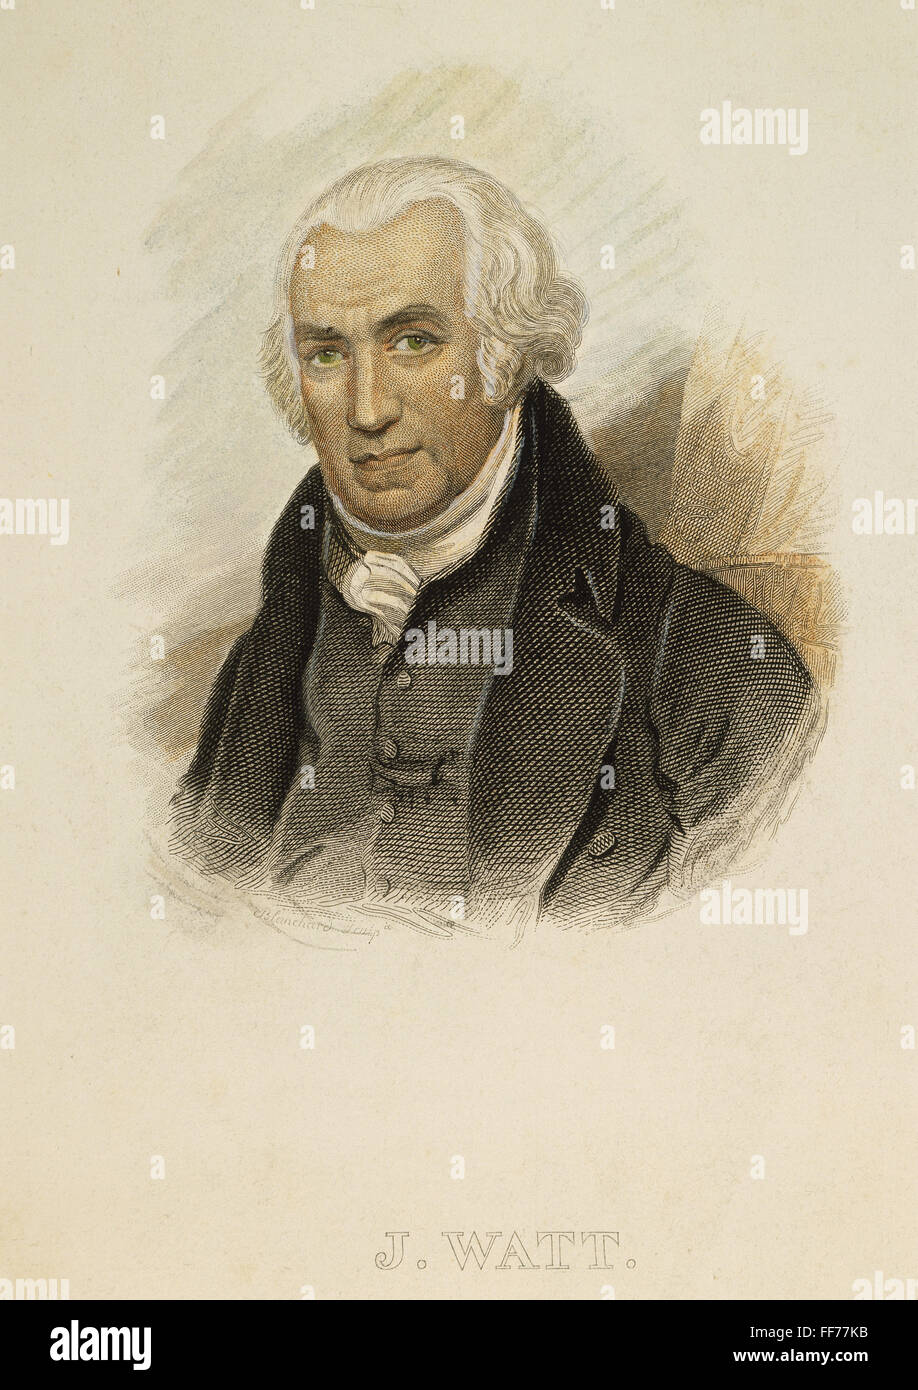 JAMES WATT (1736-1819). /nScottish Ingenieur und Erfinder. Französische Farbe Gravur, 19. Jahrhundert. Stockfoto